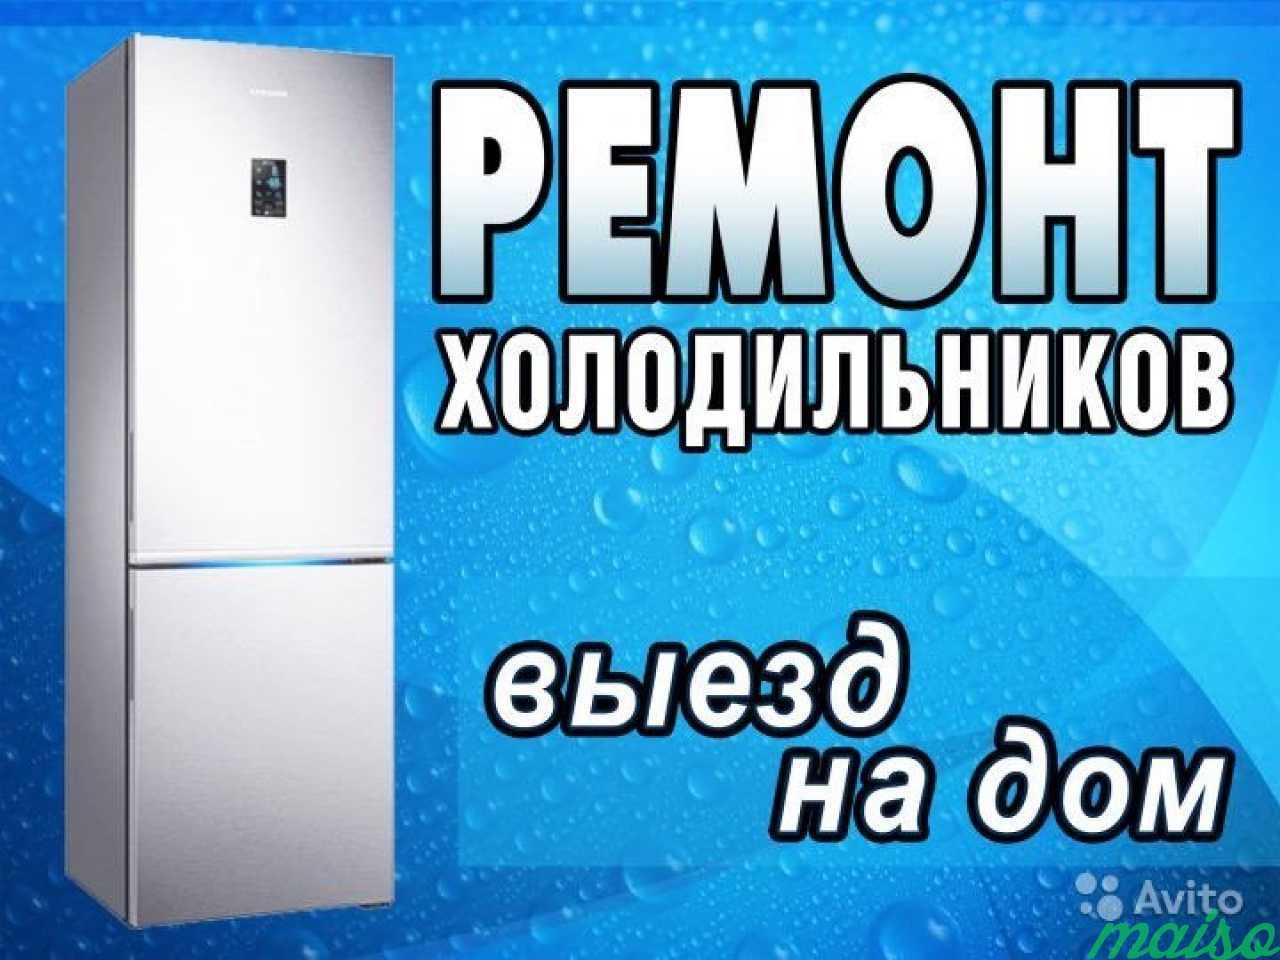 Цена ремонта холодильников петербург. Ремонт холодильников реклама. Реклама по ремонту холодильников. Ремонт холодильников на дому.